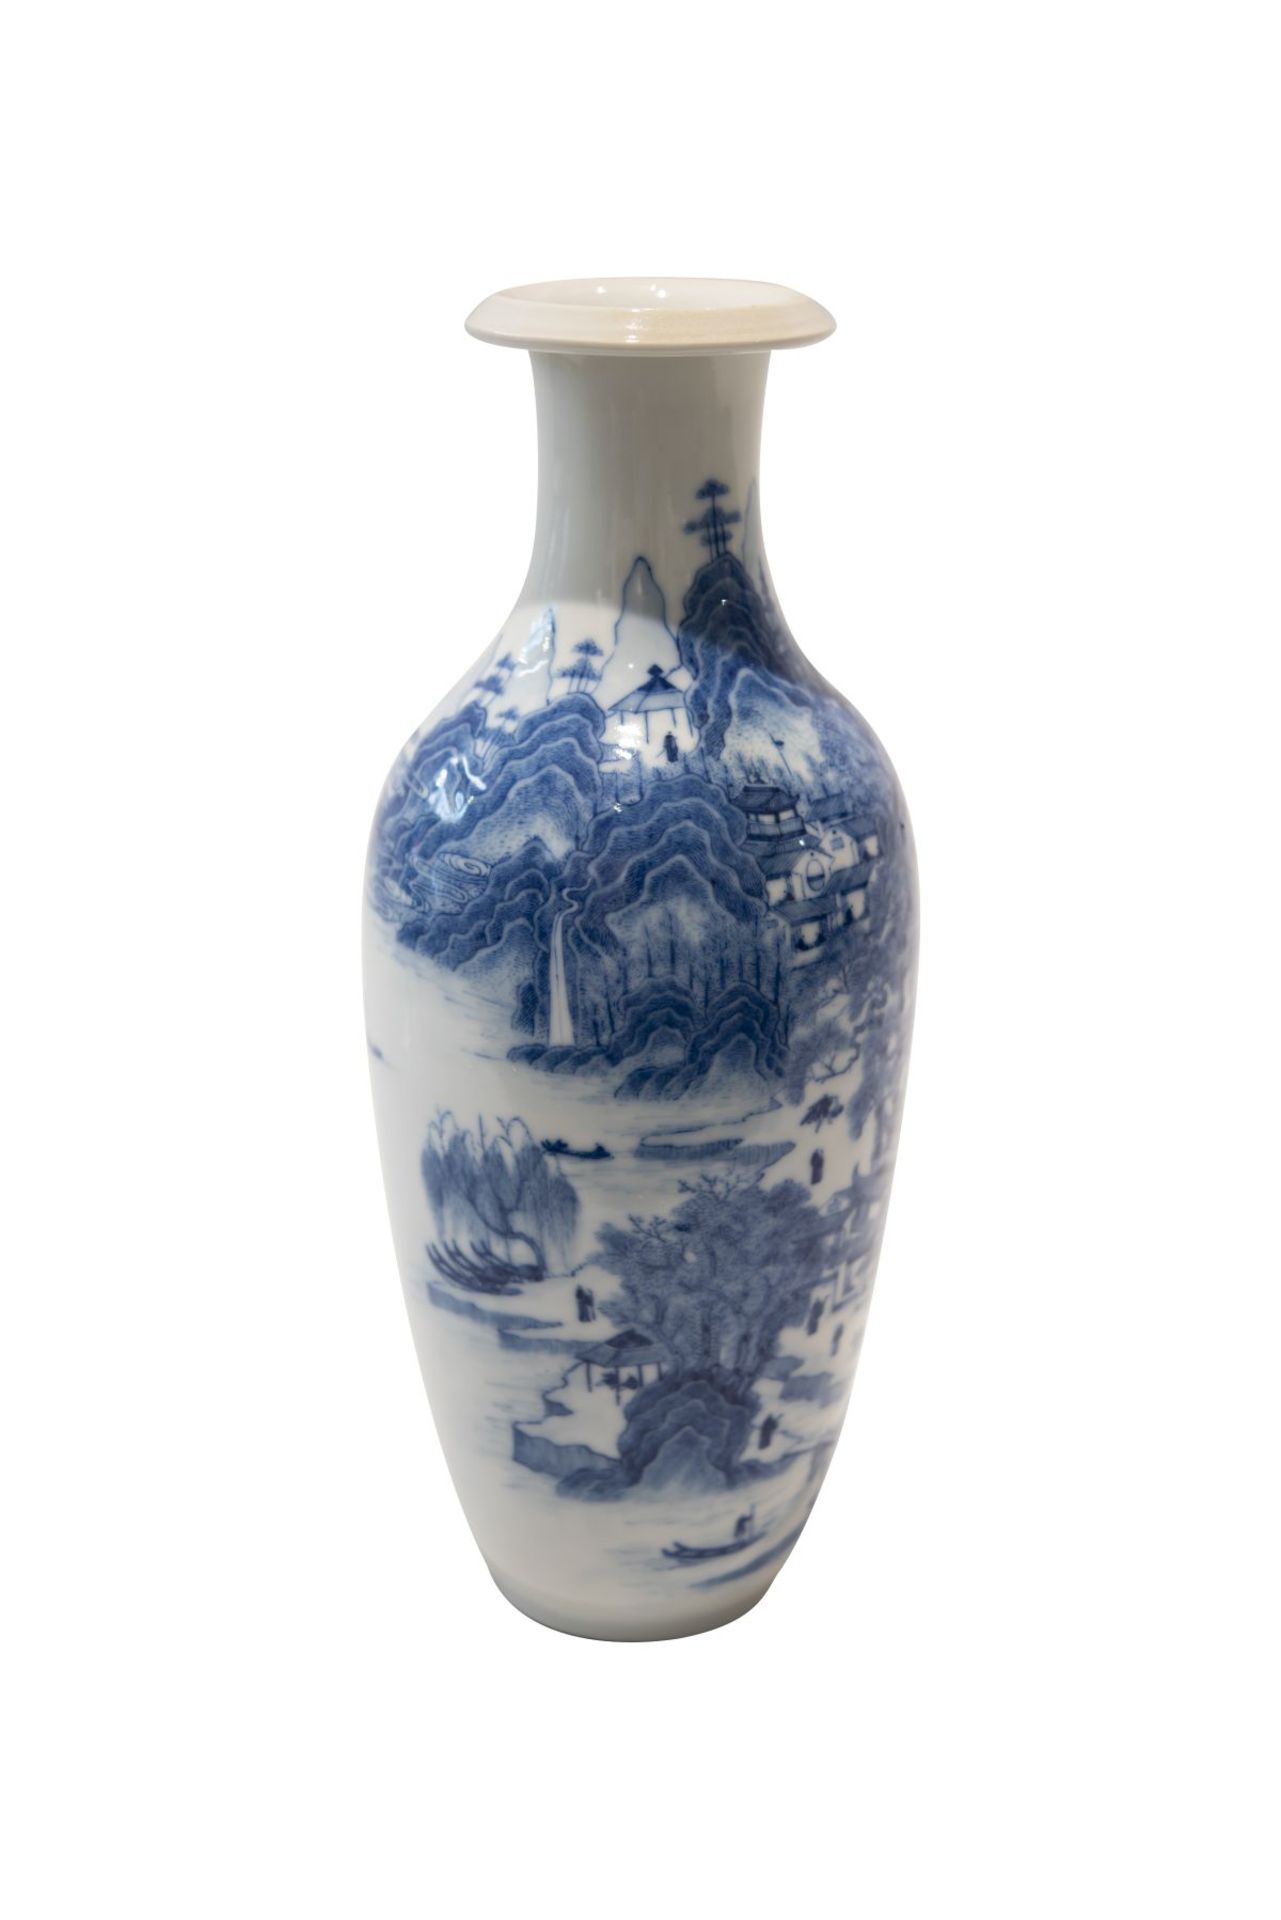 Blau-weise VaseBlau-weise Vase mit unterglasurblaue Vierzeichen Marke. Porzellan, auf der Wandung